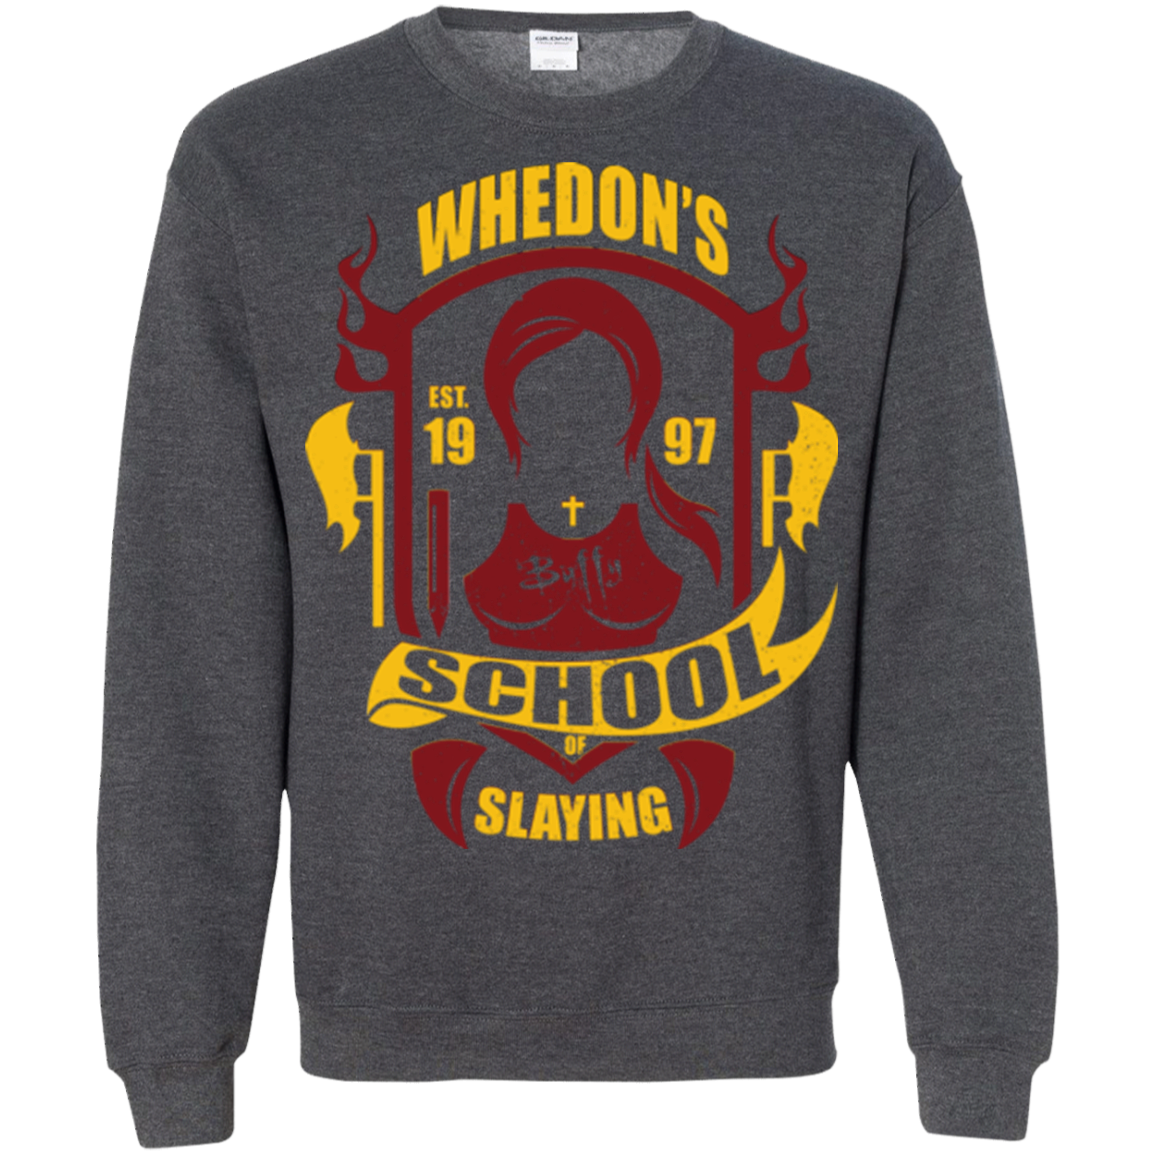 School of Slaying Crewneck Sweatshirt